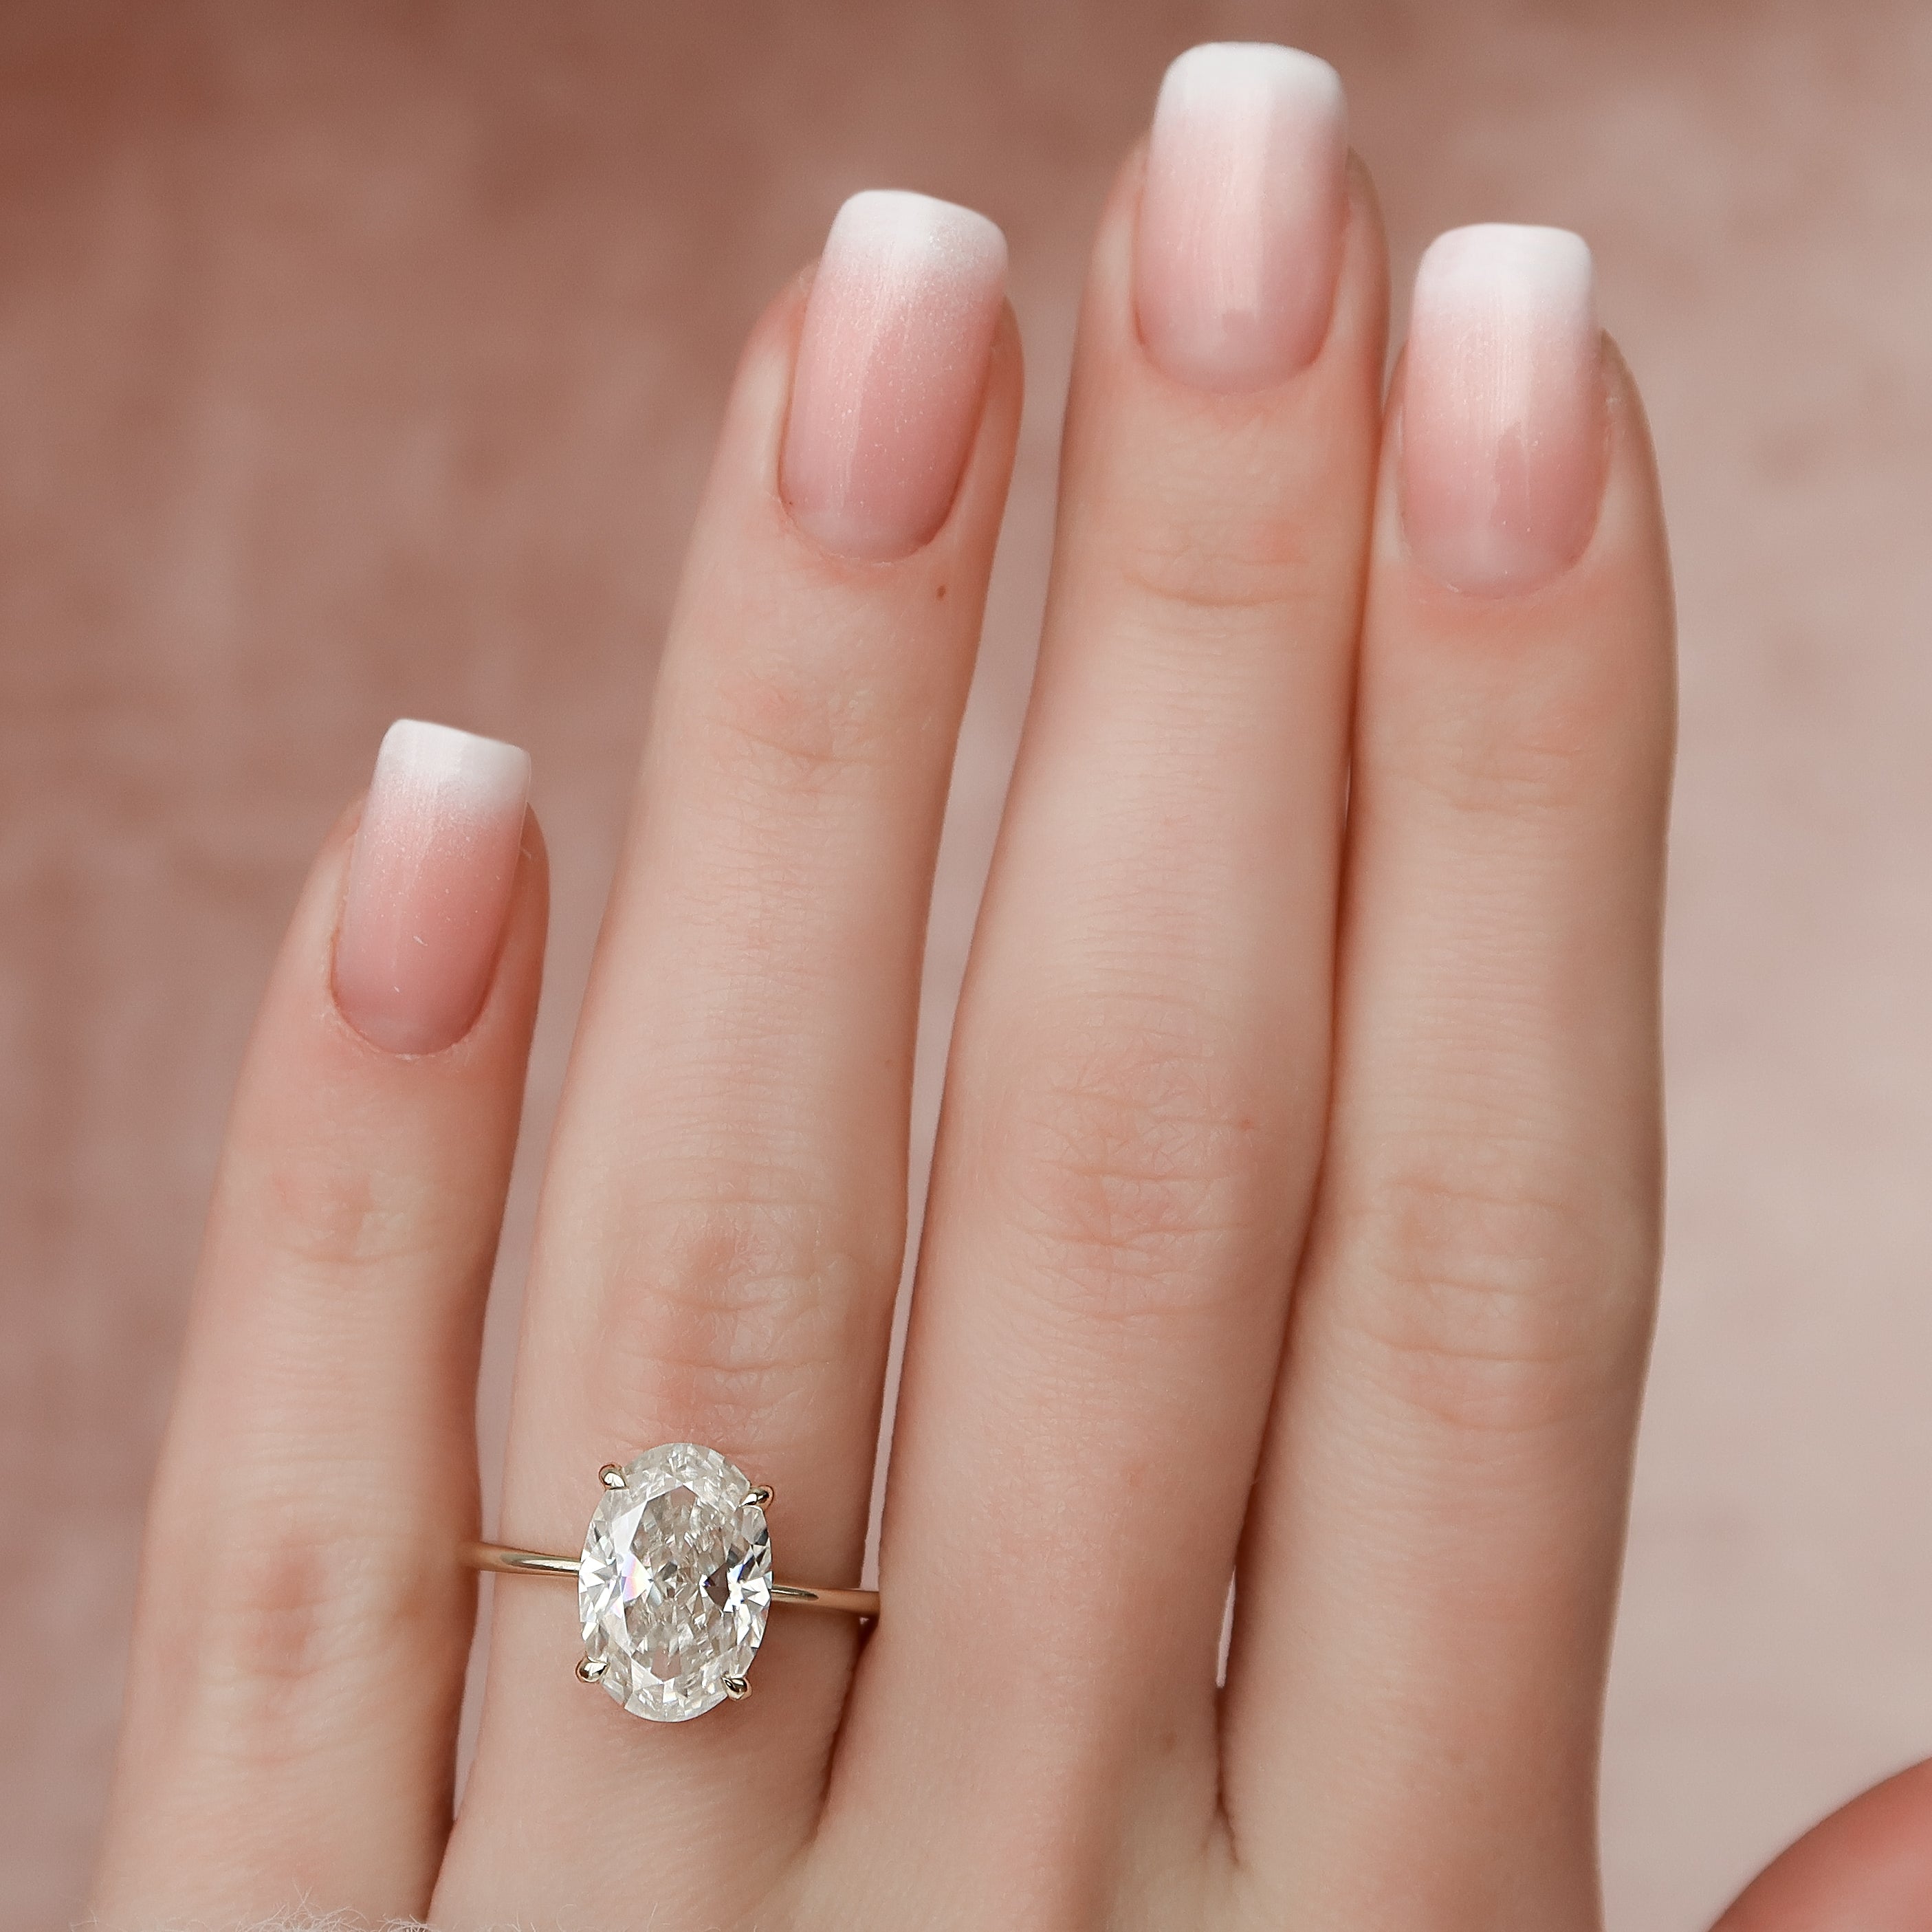 Diamond Heart Ring 3/4 Carat tw 14K White Gold | Jared